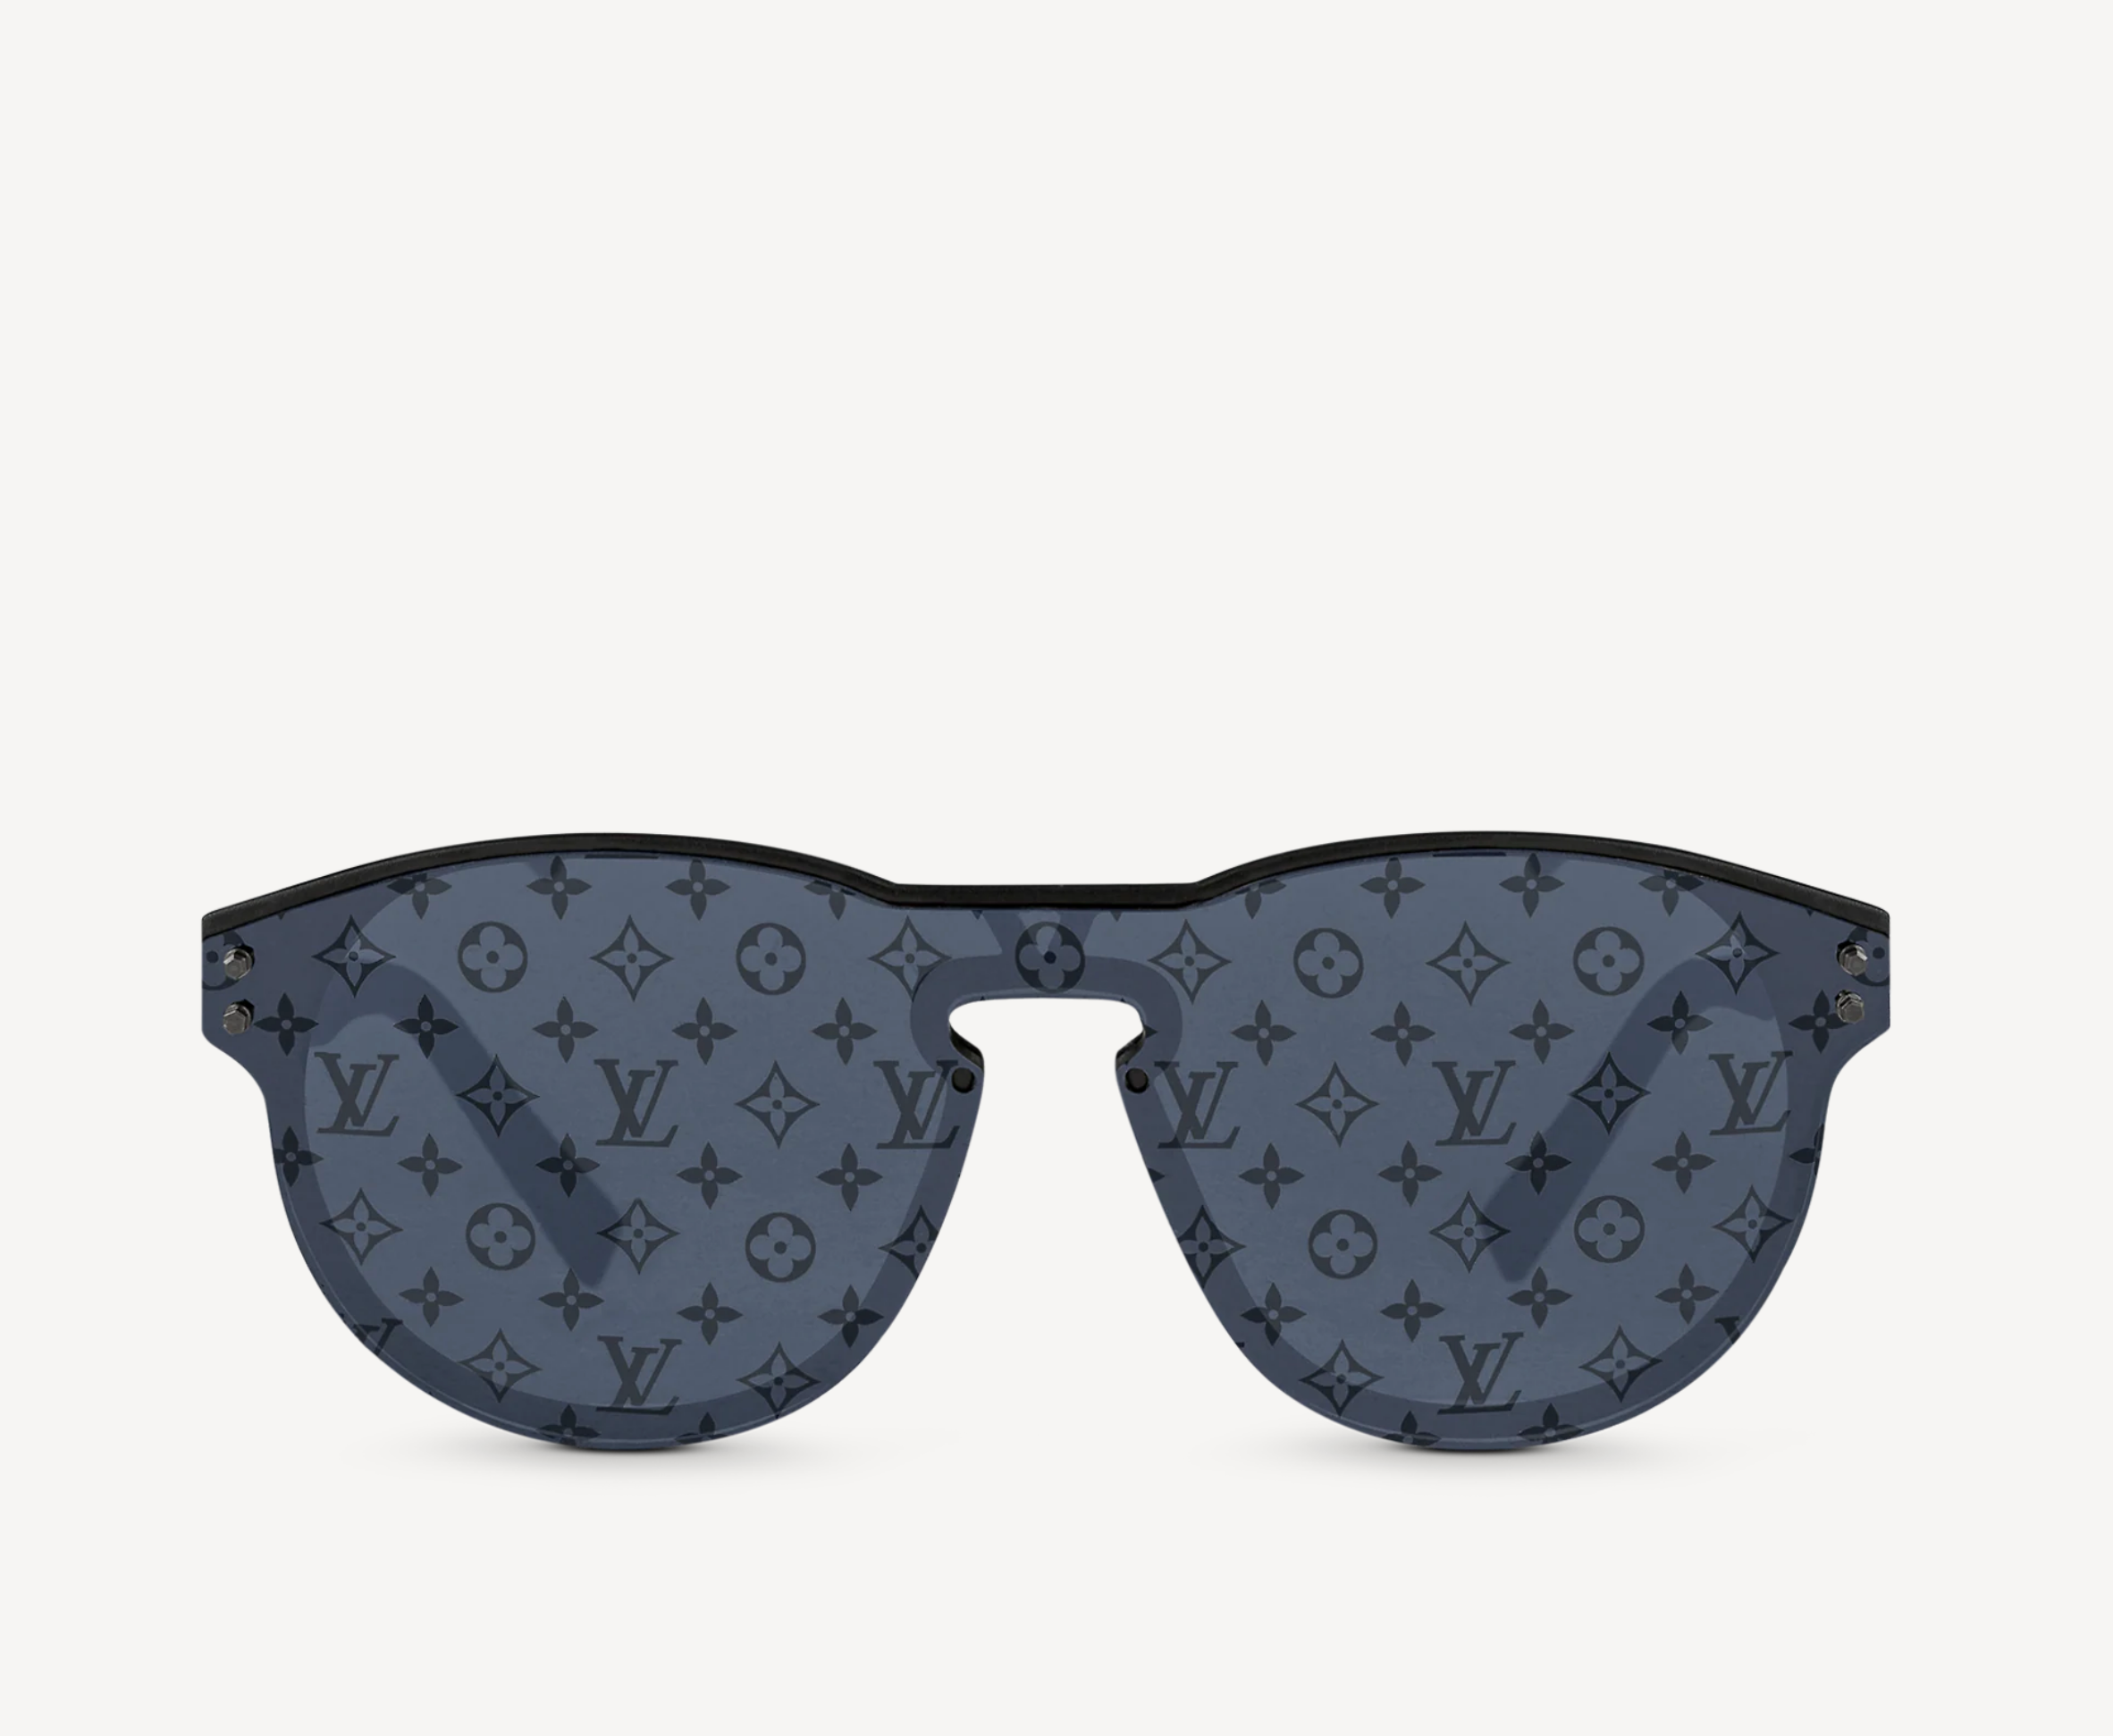 Louis Vuitton LV Signature Square Round Sunglasses